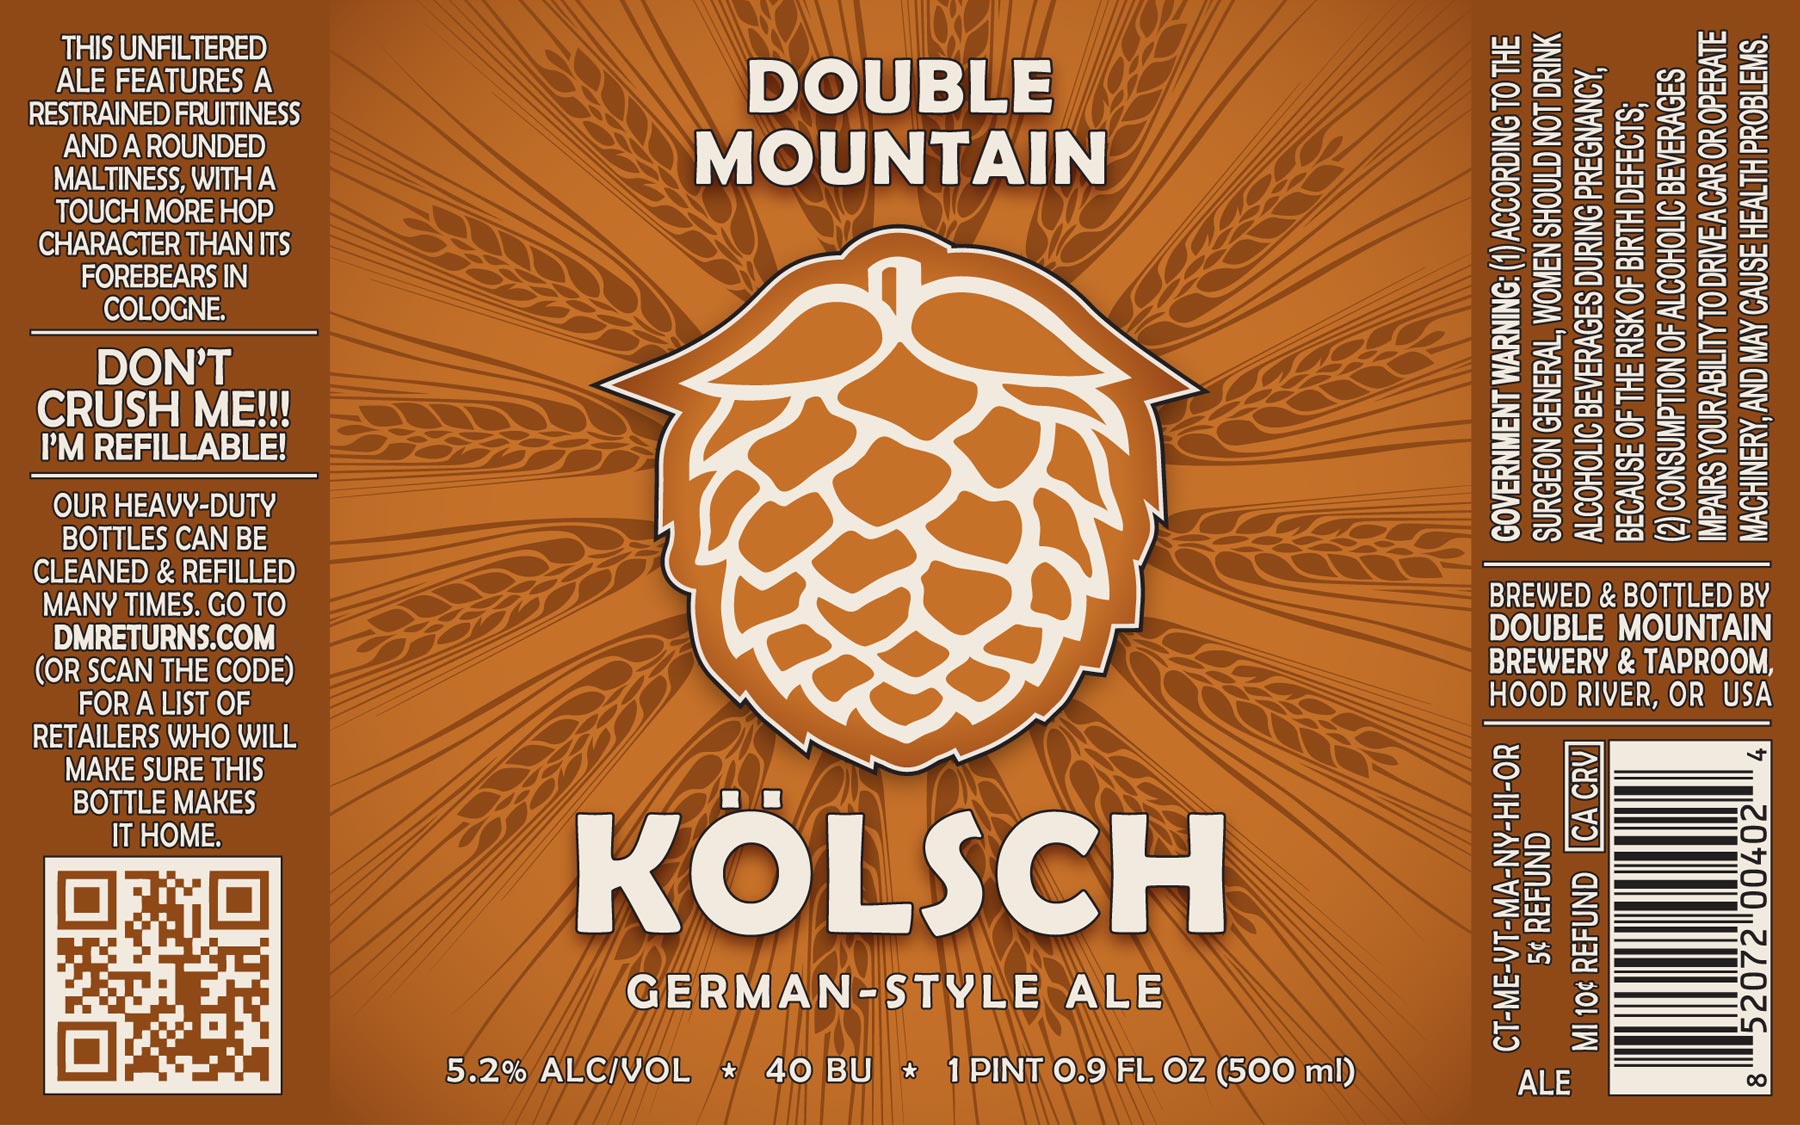 Double Mountain Kolsch